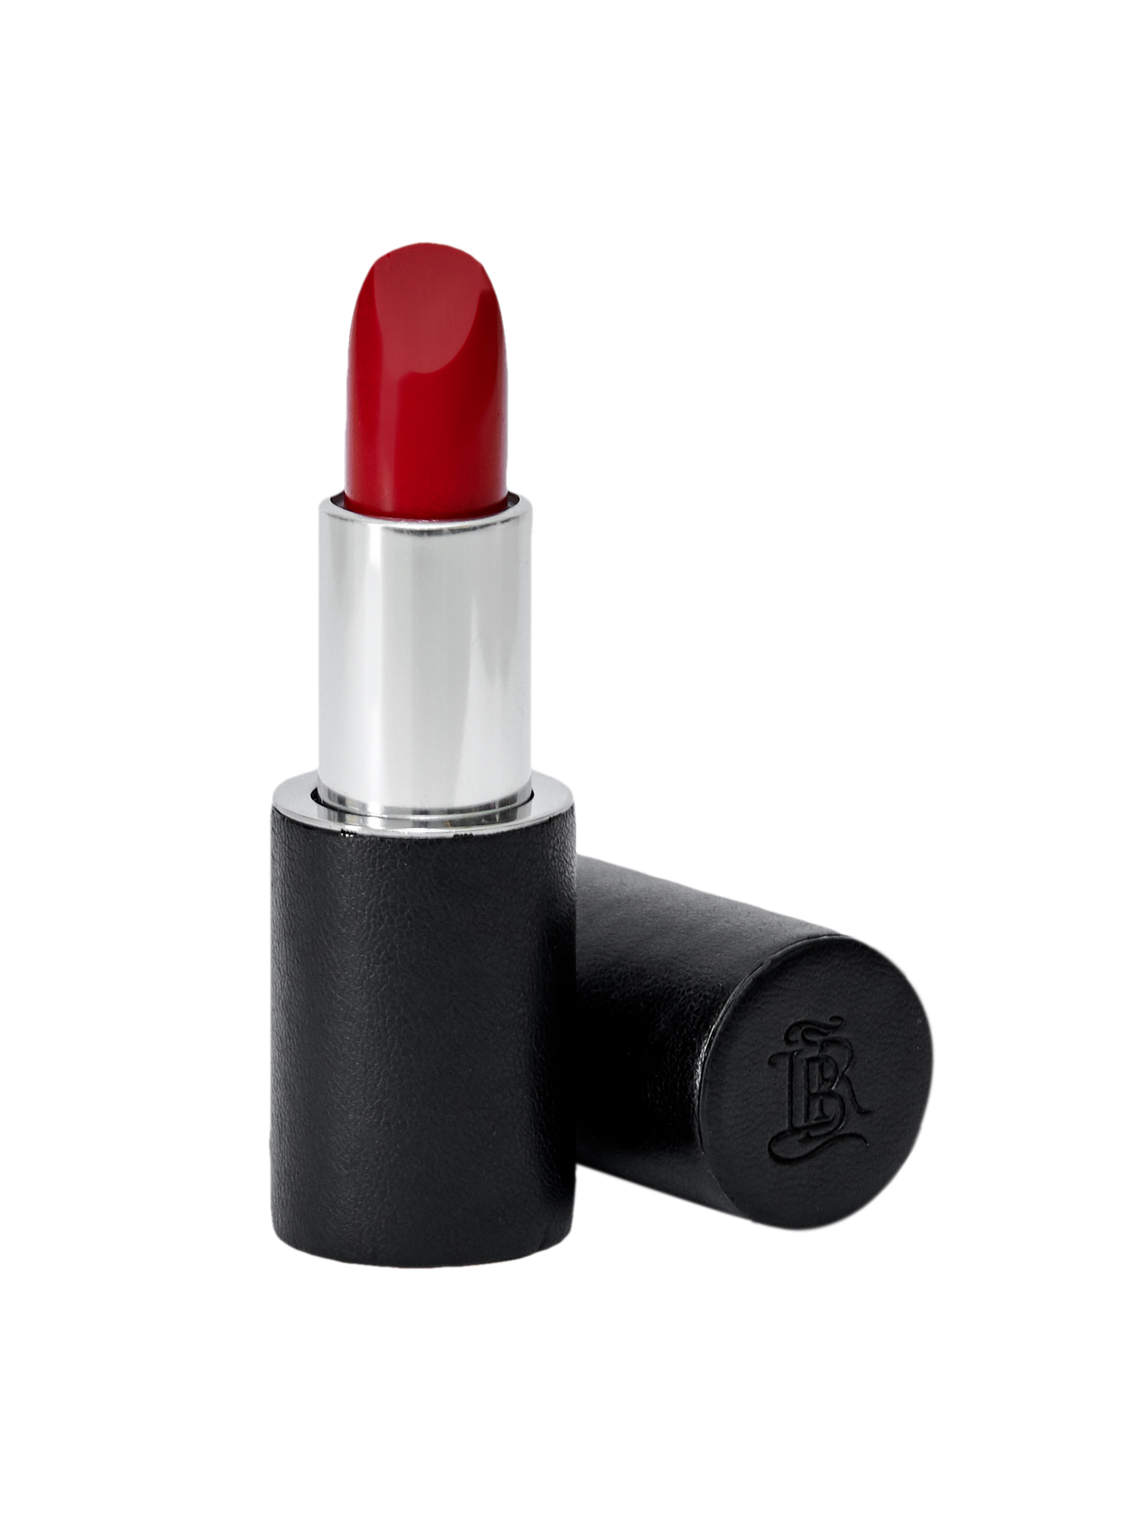 The Attico "Lipsynch" lipstick in collaboration with La Bouche Rouge 3